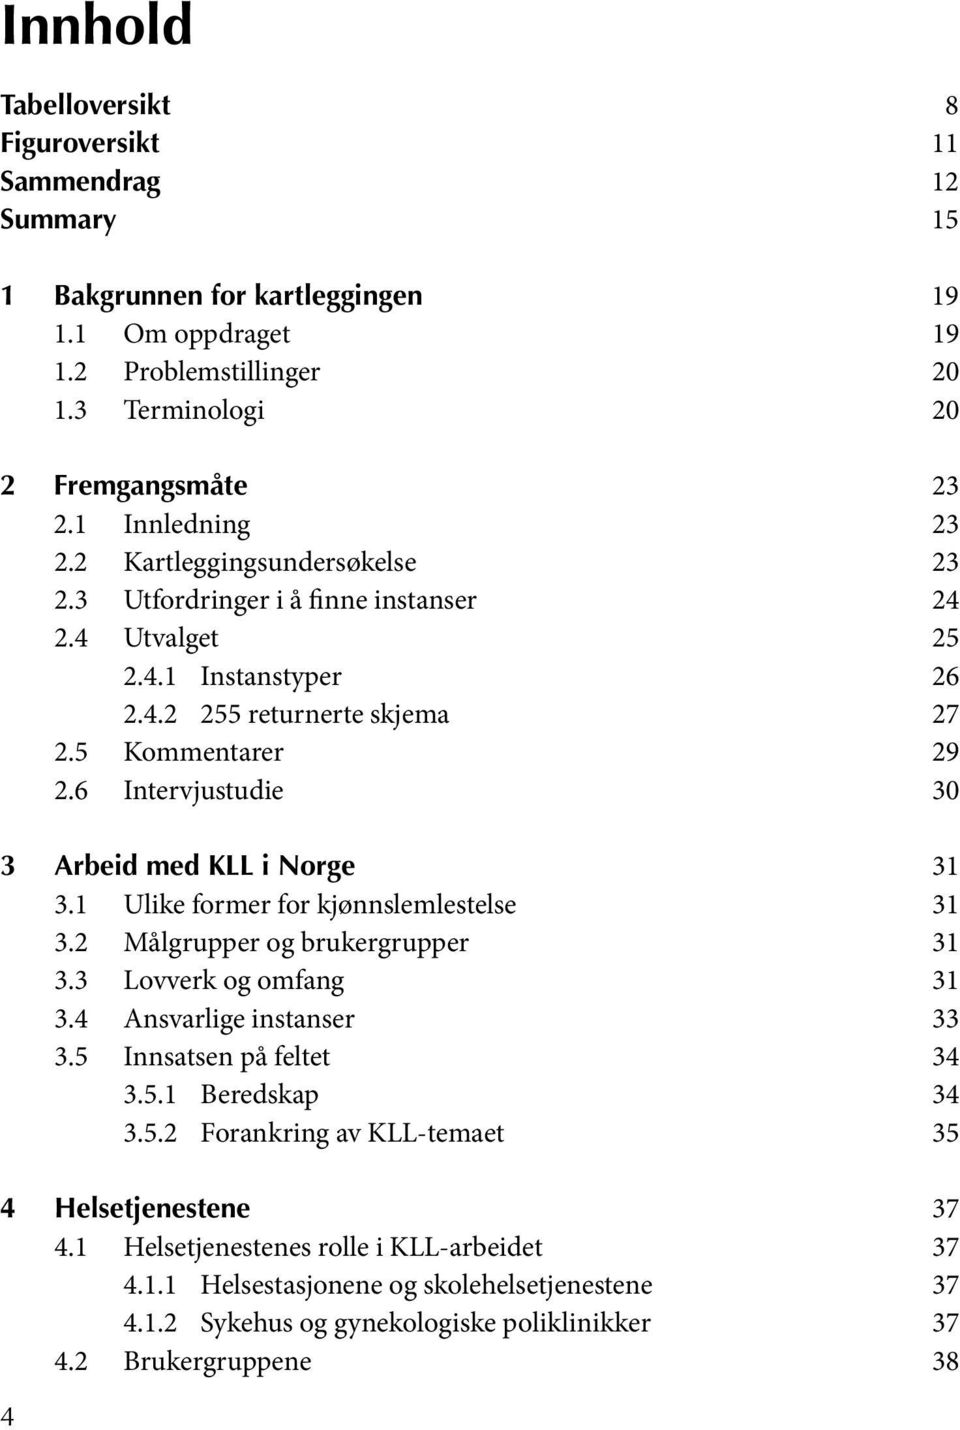 6 Intervjustudie 30 3 Arbeid med KLL i Norge 31 3.1 Ulike former for kjønnslemlestelse 31 3.2 Målgrupper og brukergrupper 31 3.3 Lovverk og omfang 31 3.4 Ansvarlige instanser 33 3.